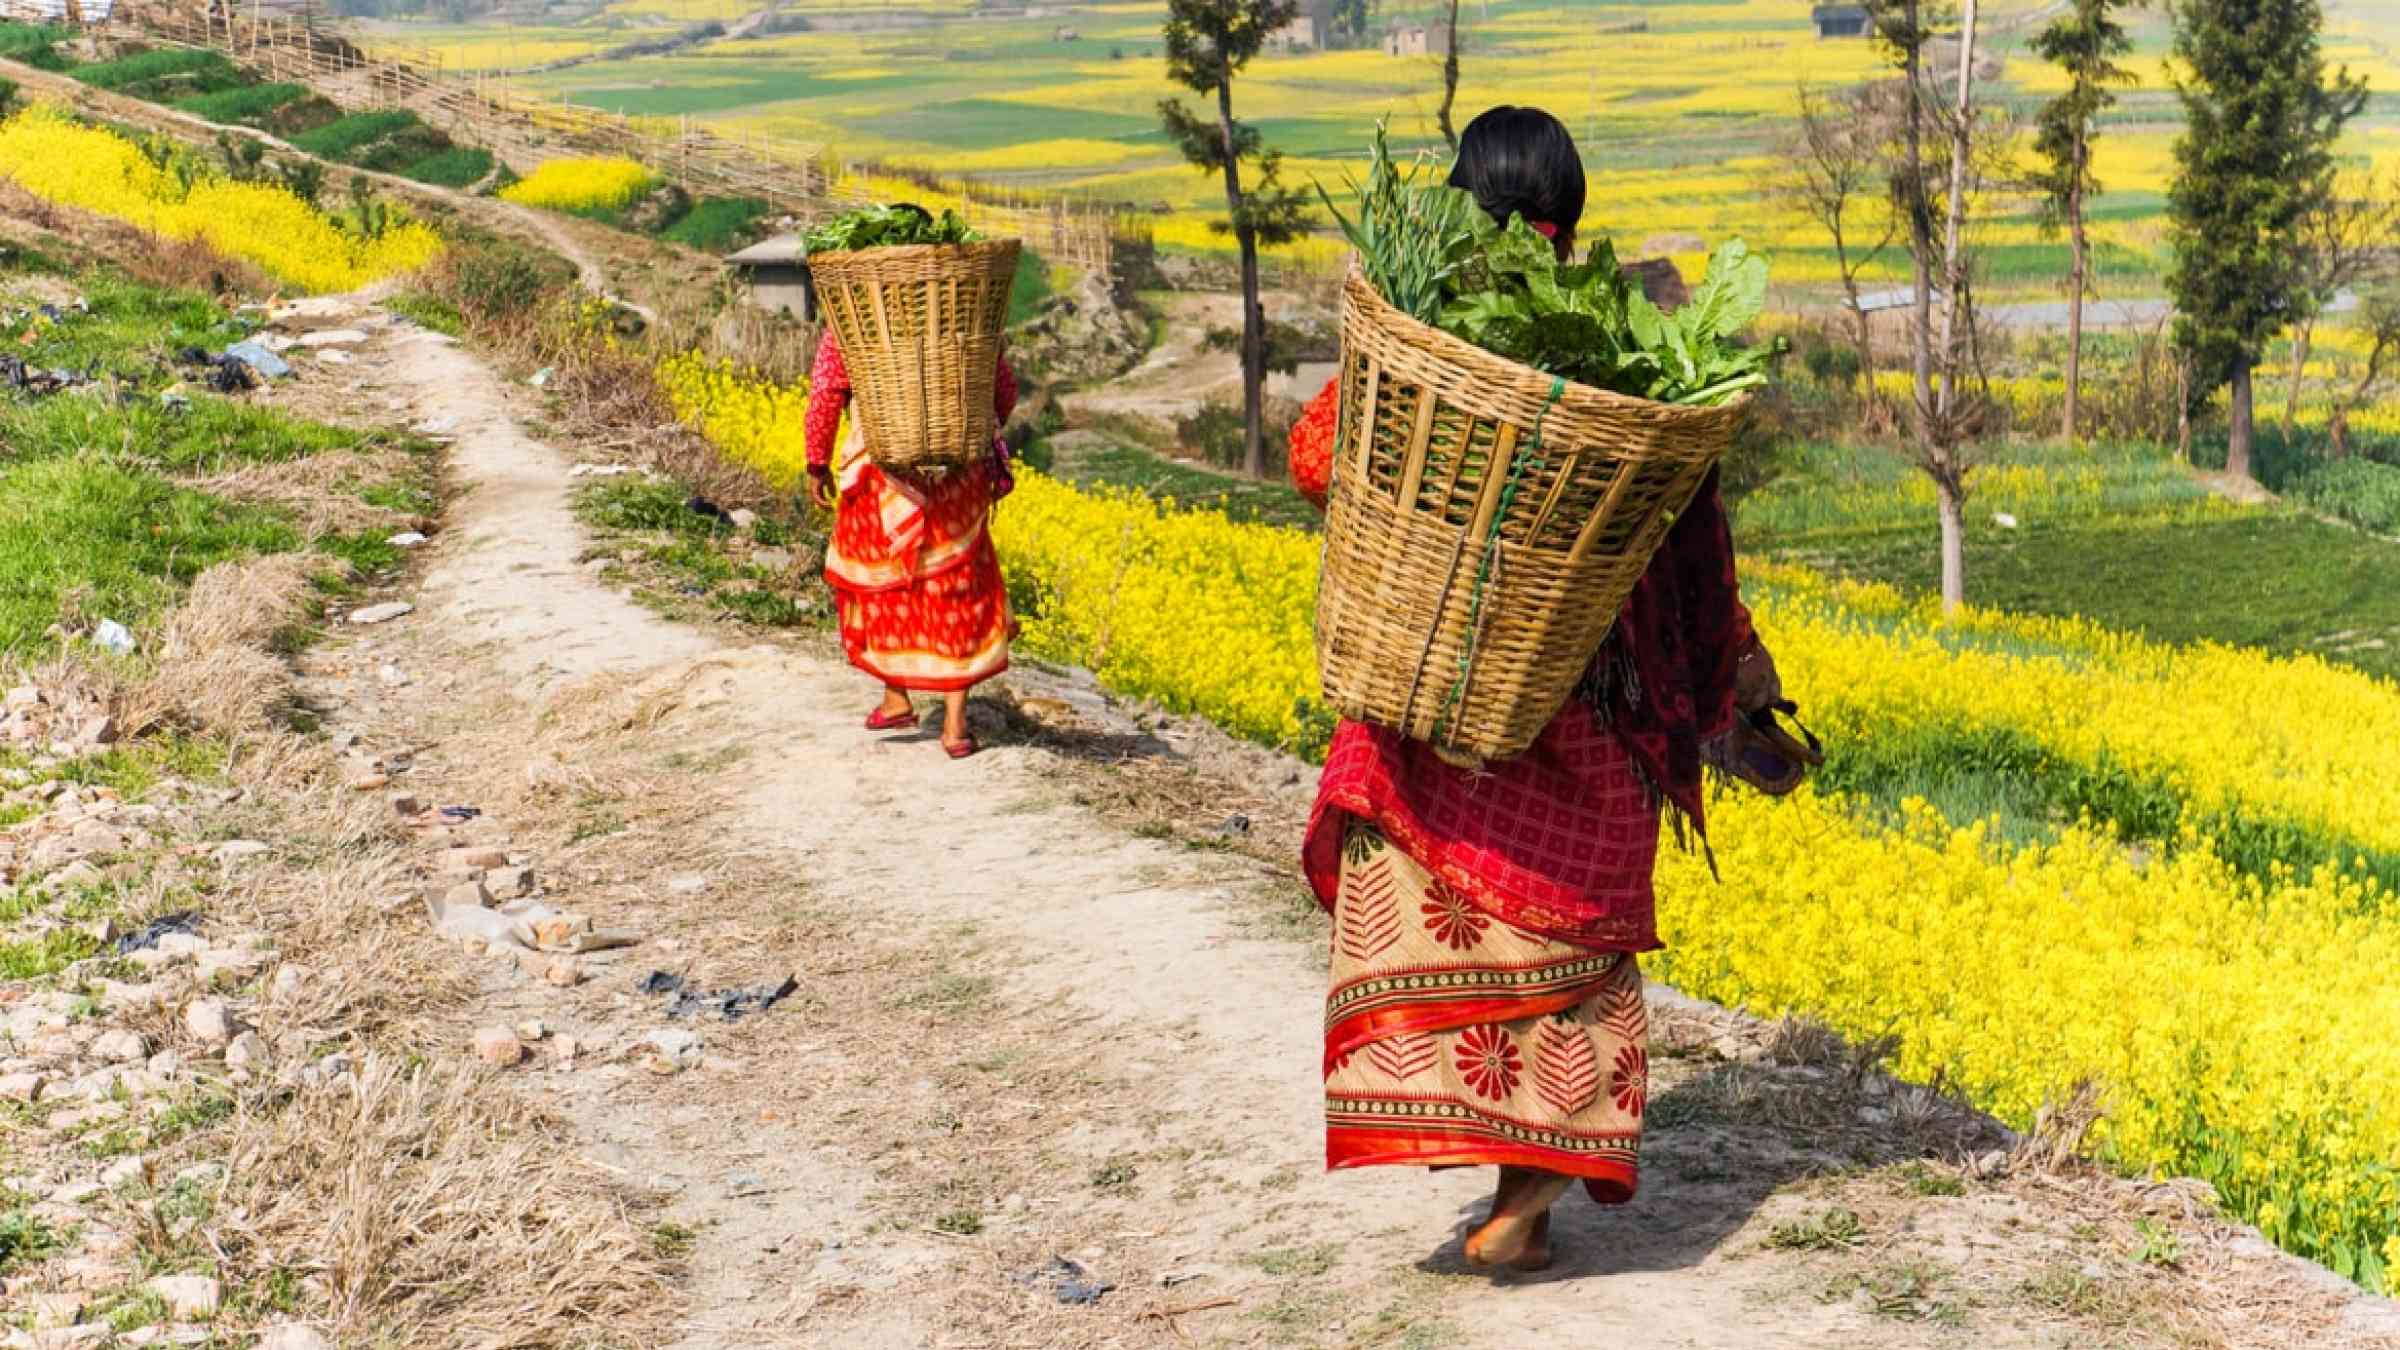 Two women walking down a plath carrying baskets, in Nepal